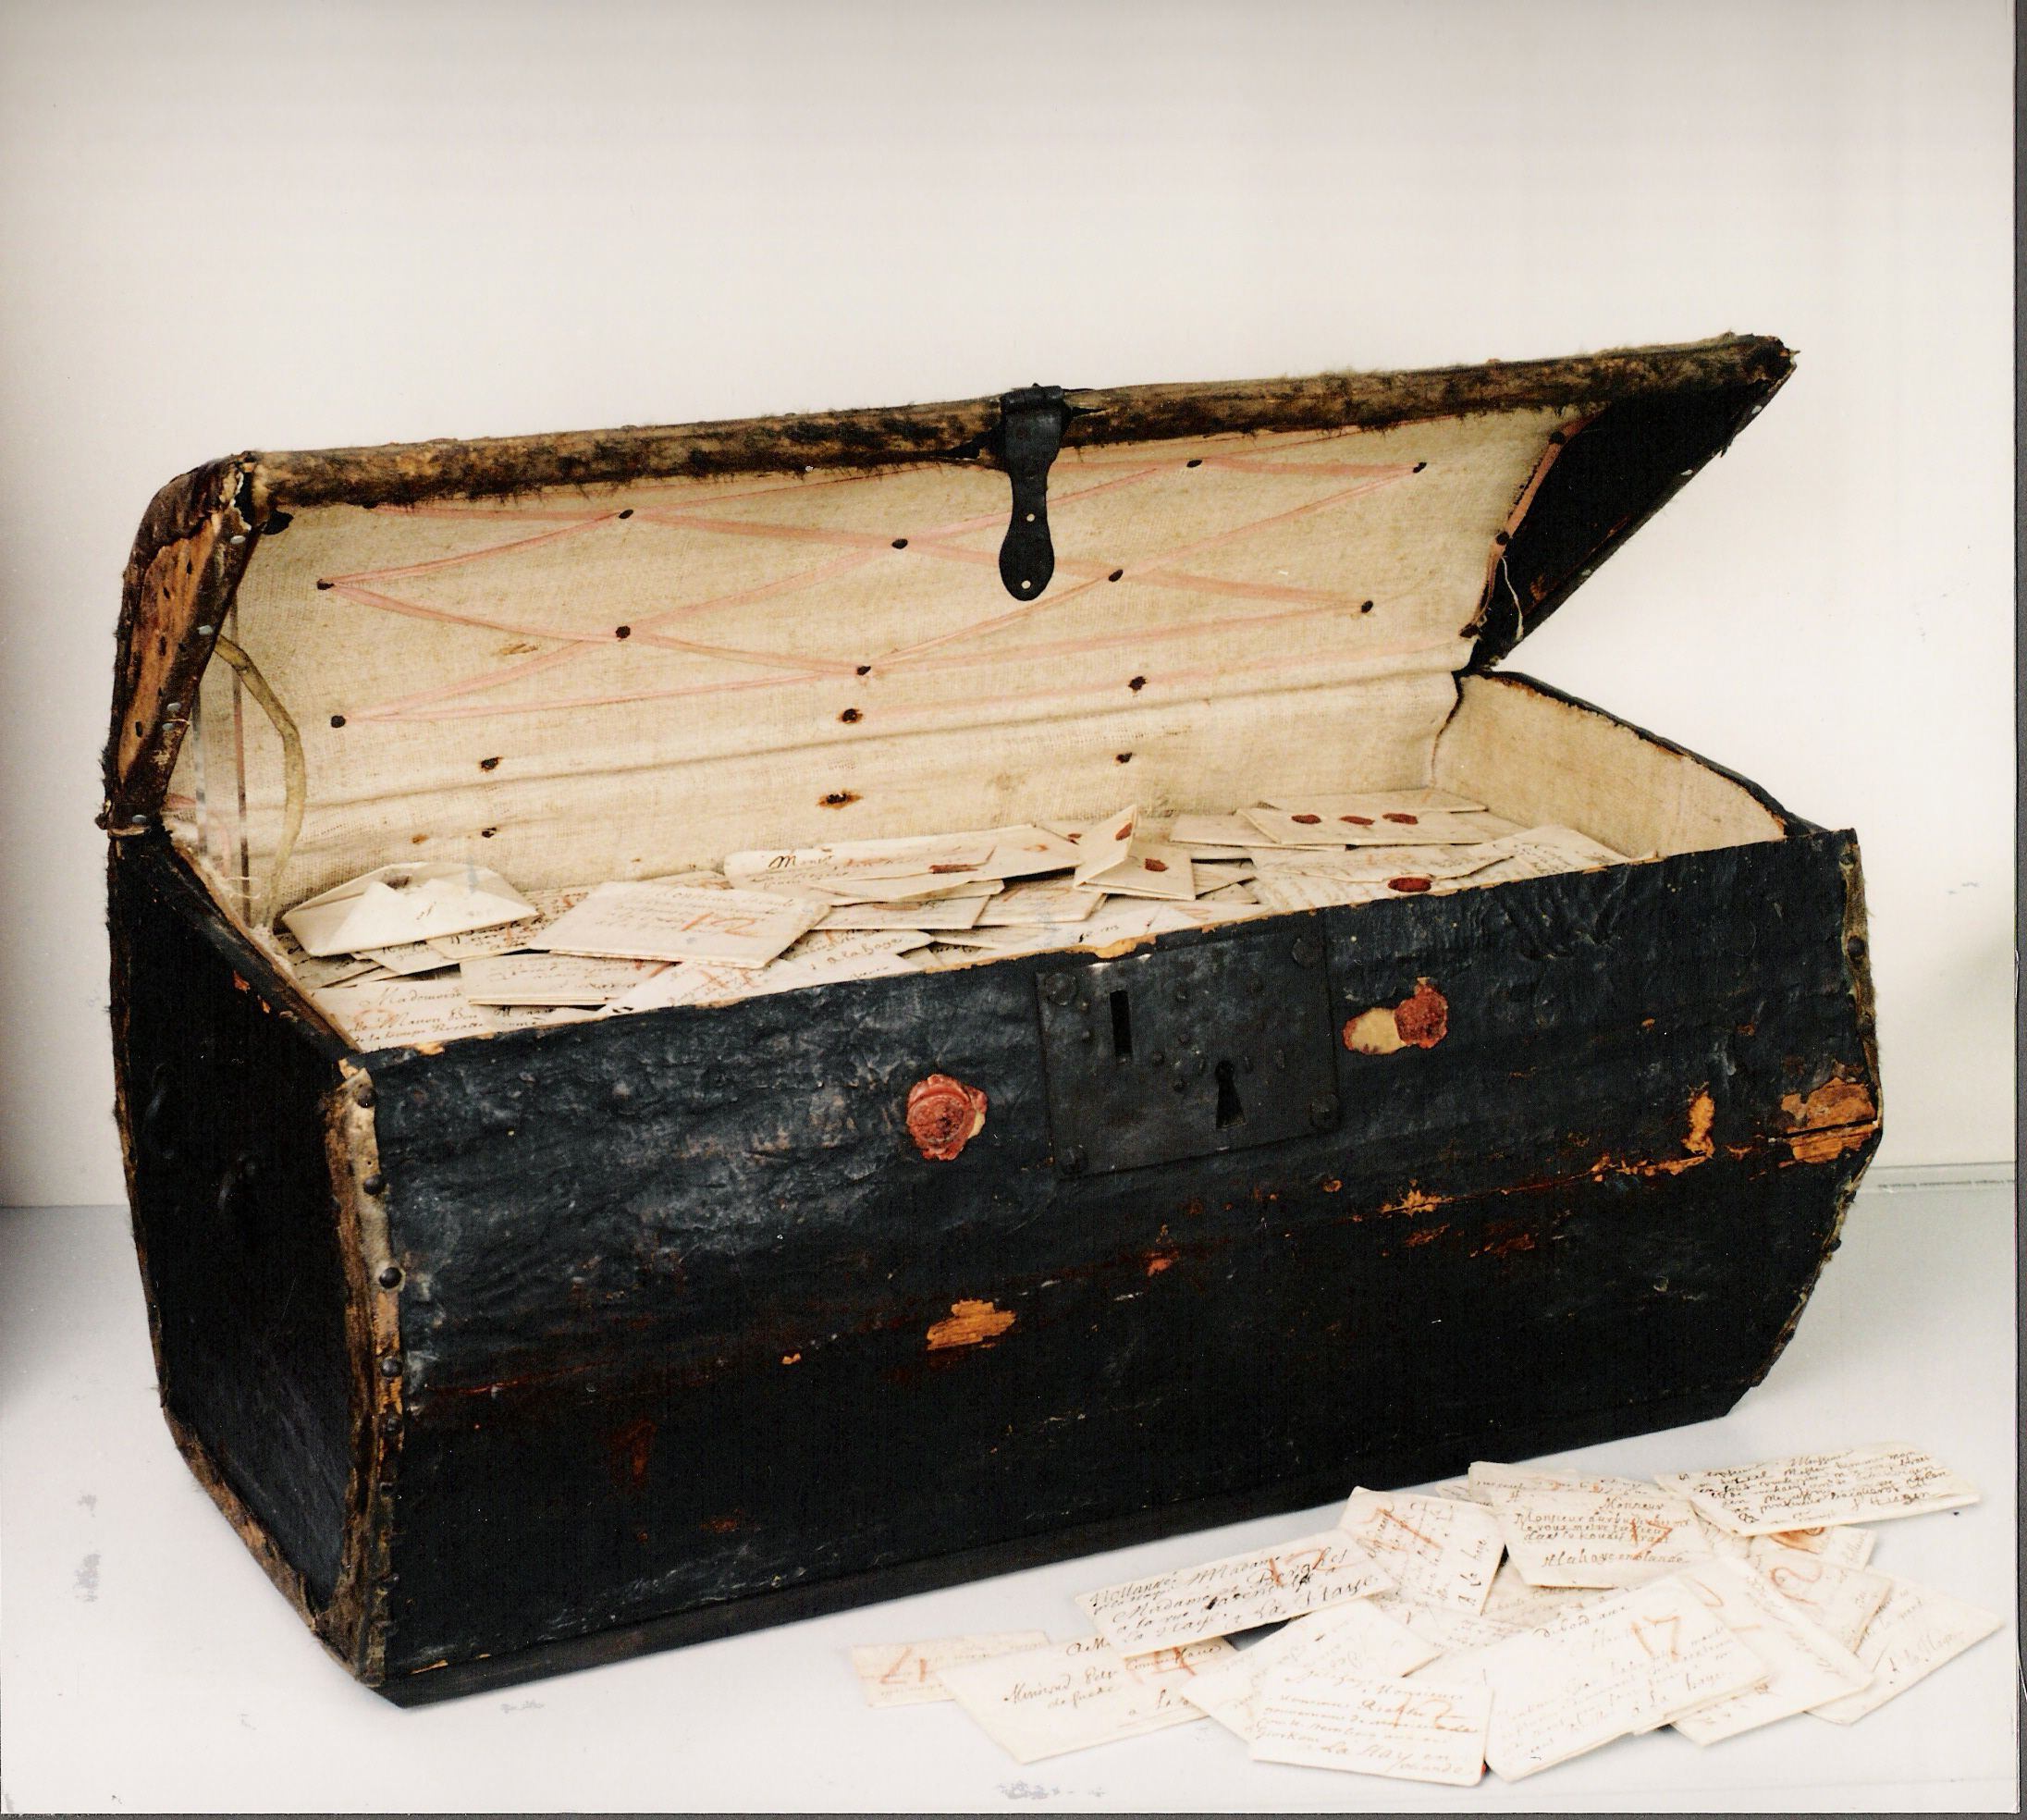 El Baúl de Brienne contiene 577 paquetes de cartas cerradas del Renacimiento europeo. 